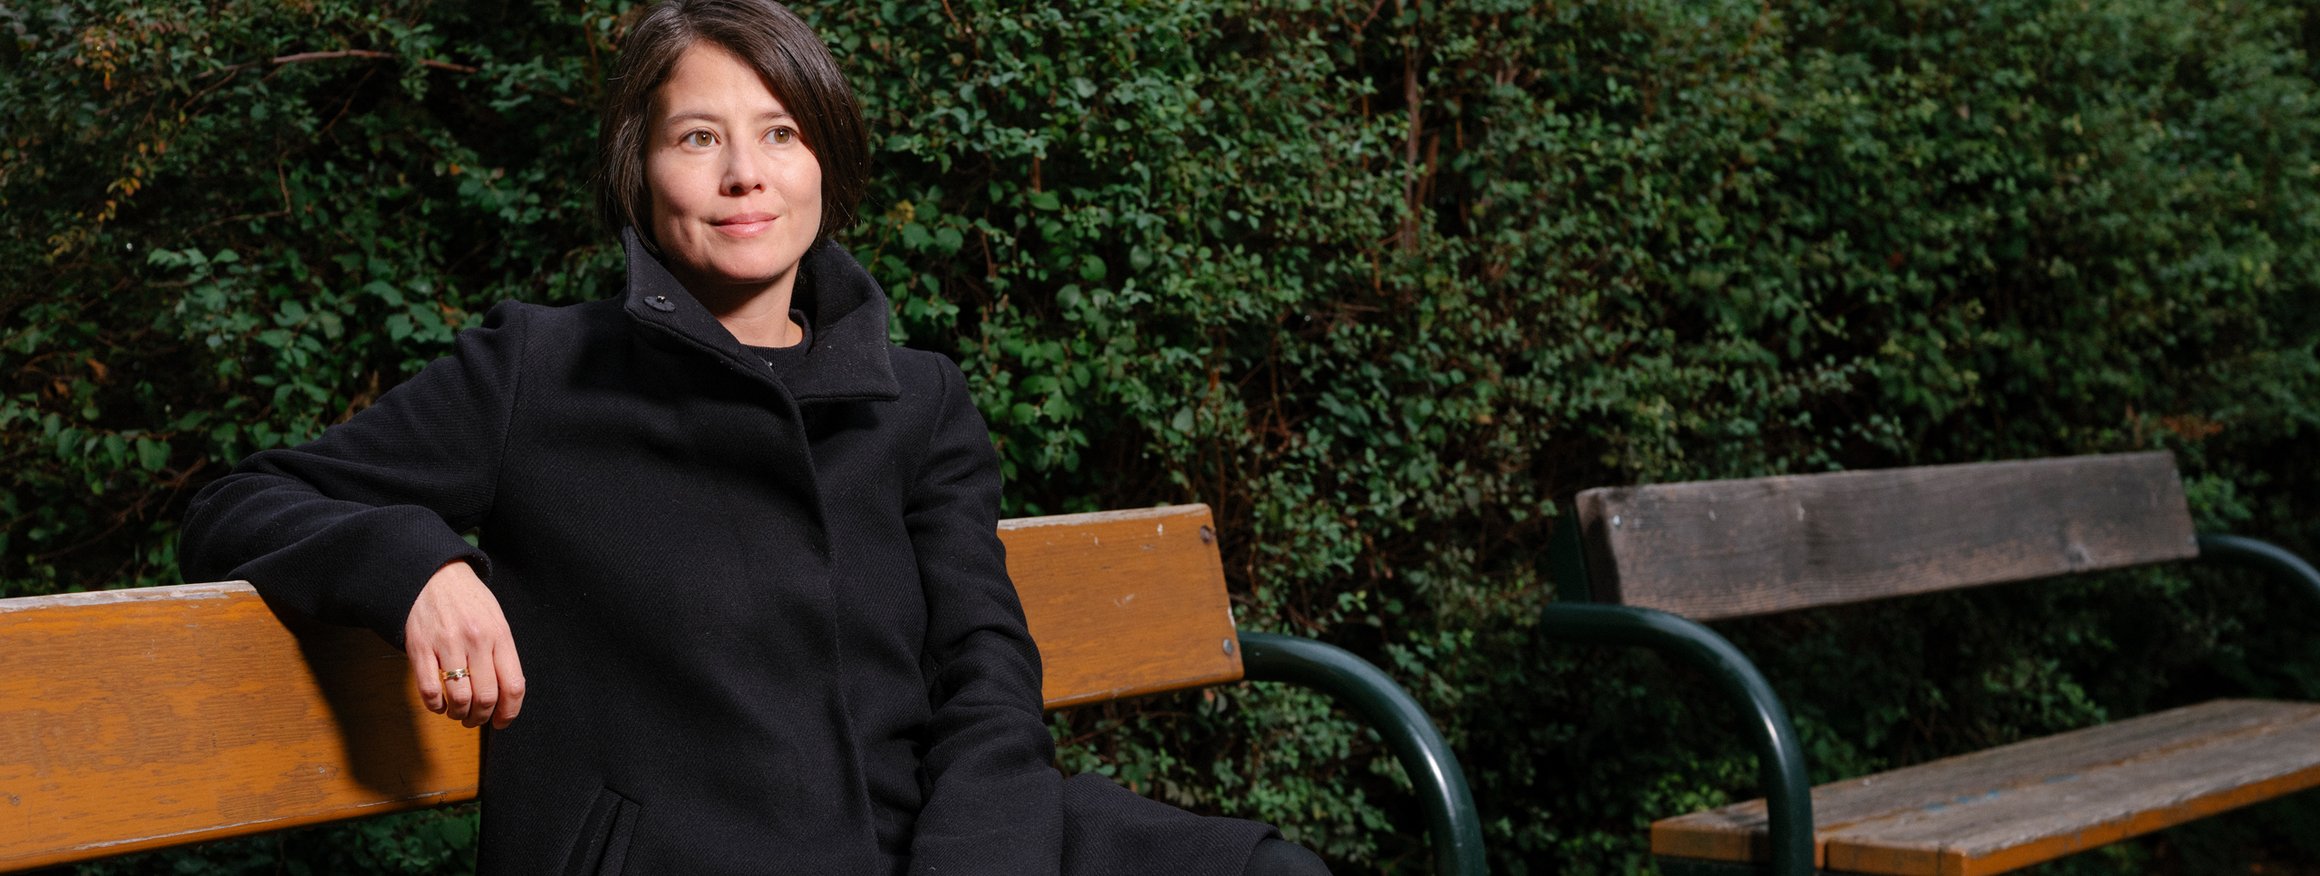 Die Autorin Milena Michiko sitzt auf einer Parkbank vor einer grünen Hecke.